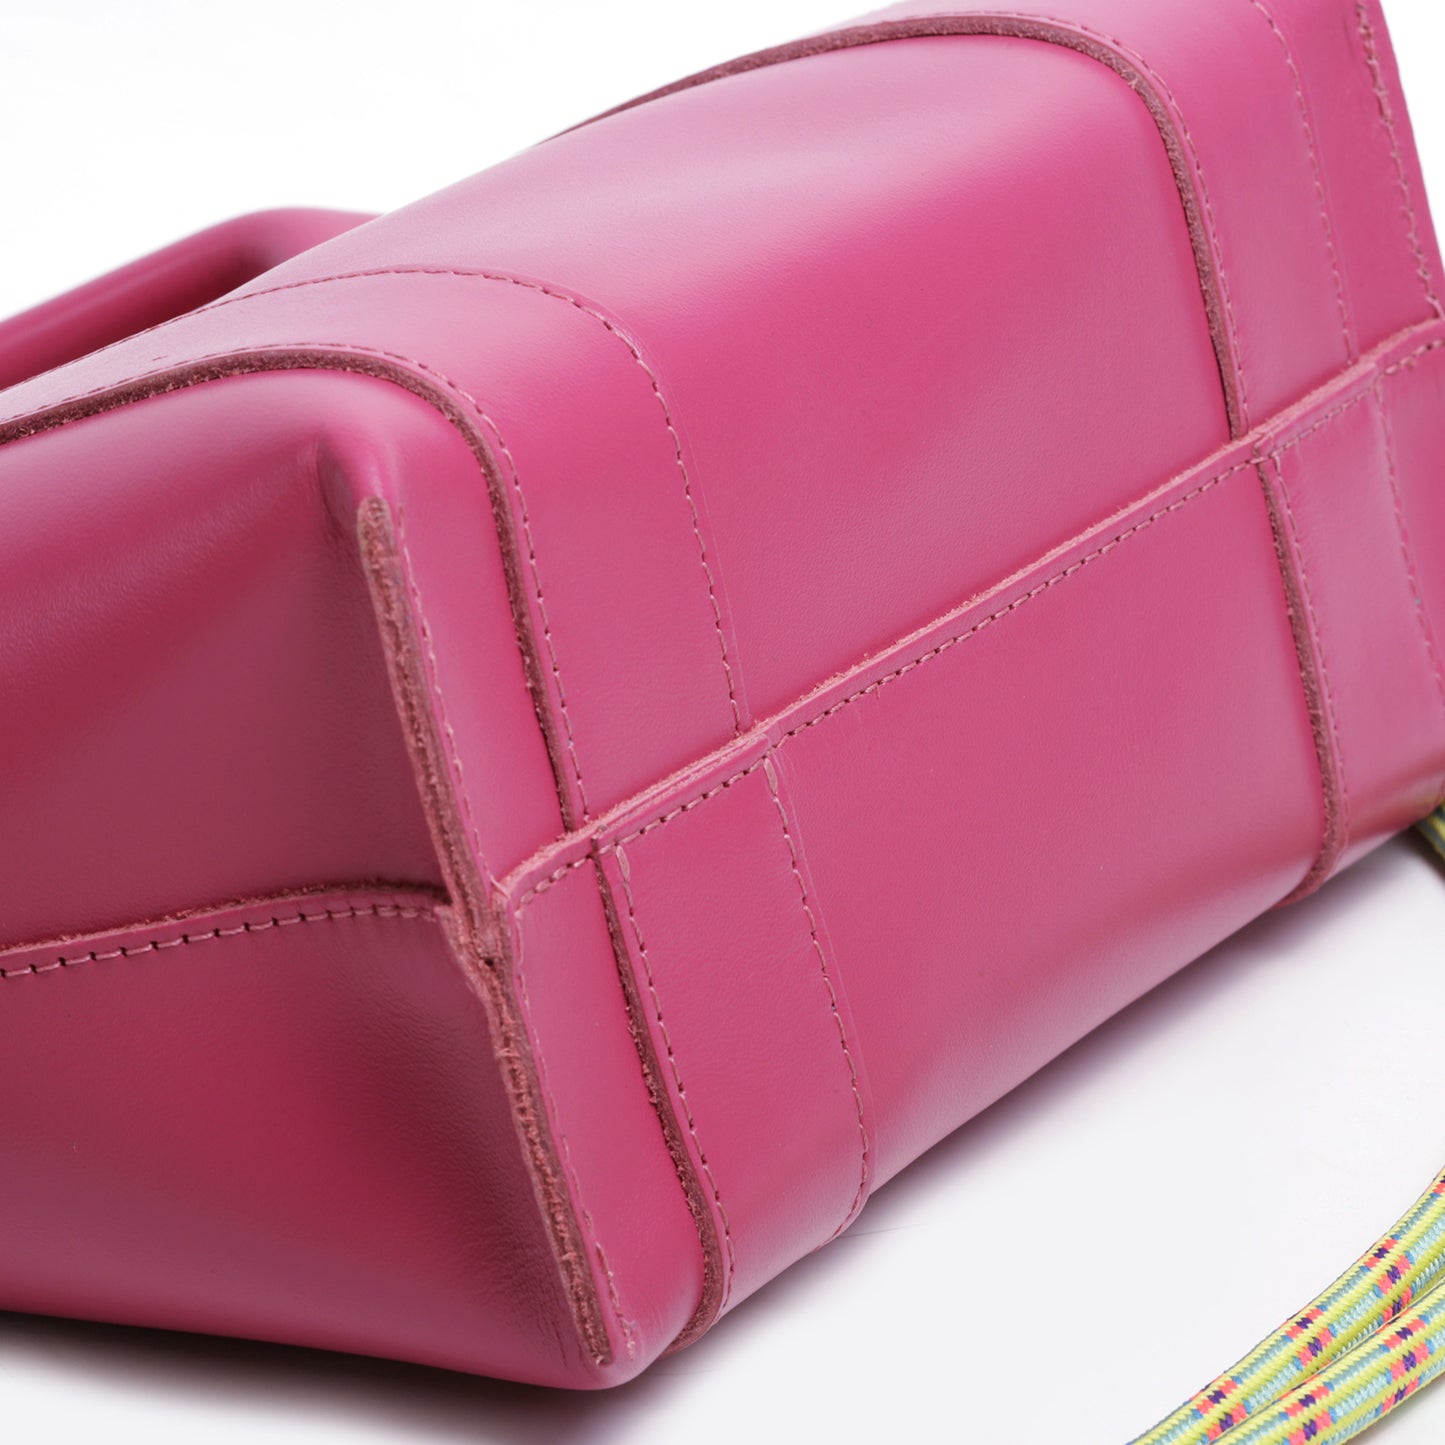 Pink Studio Edition Box Bag